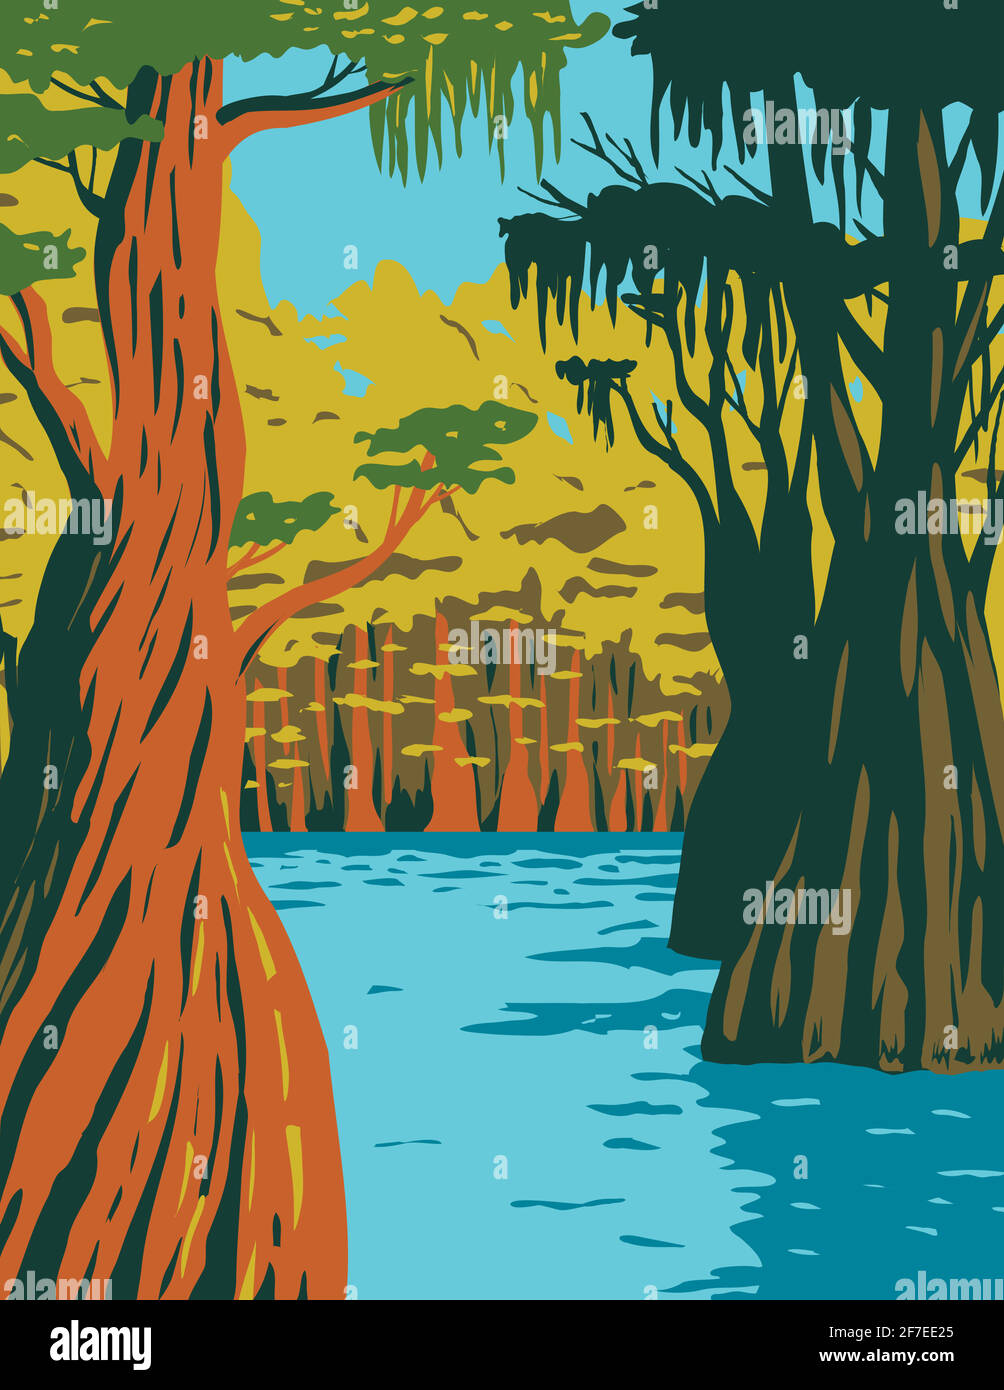 WPA poster arte di cipresso calvo che cresce nella palude Di Owl Creek in Apalachicola National Forest situato nel Florida Panhandle in opere progetto ADM Illustrazione Vettoriale